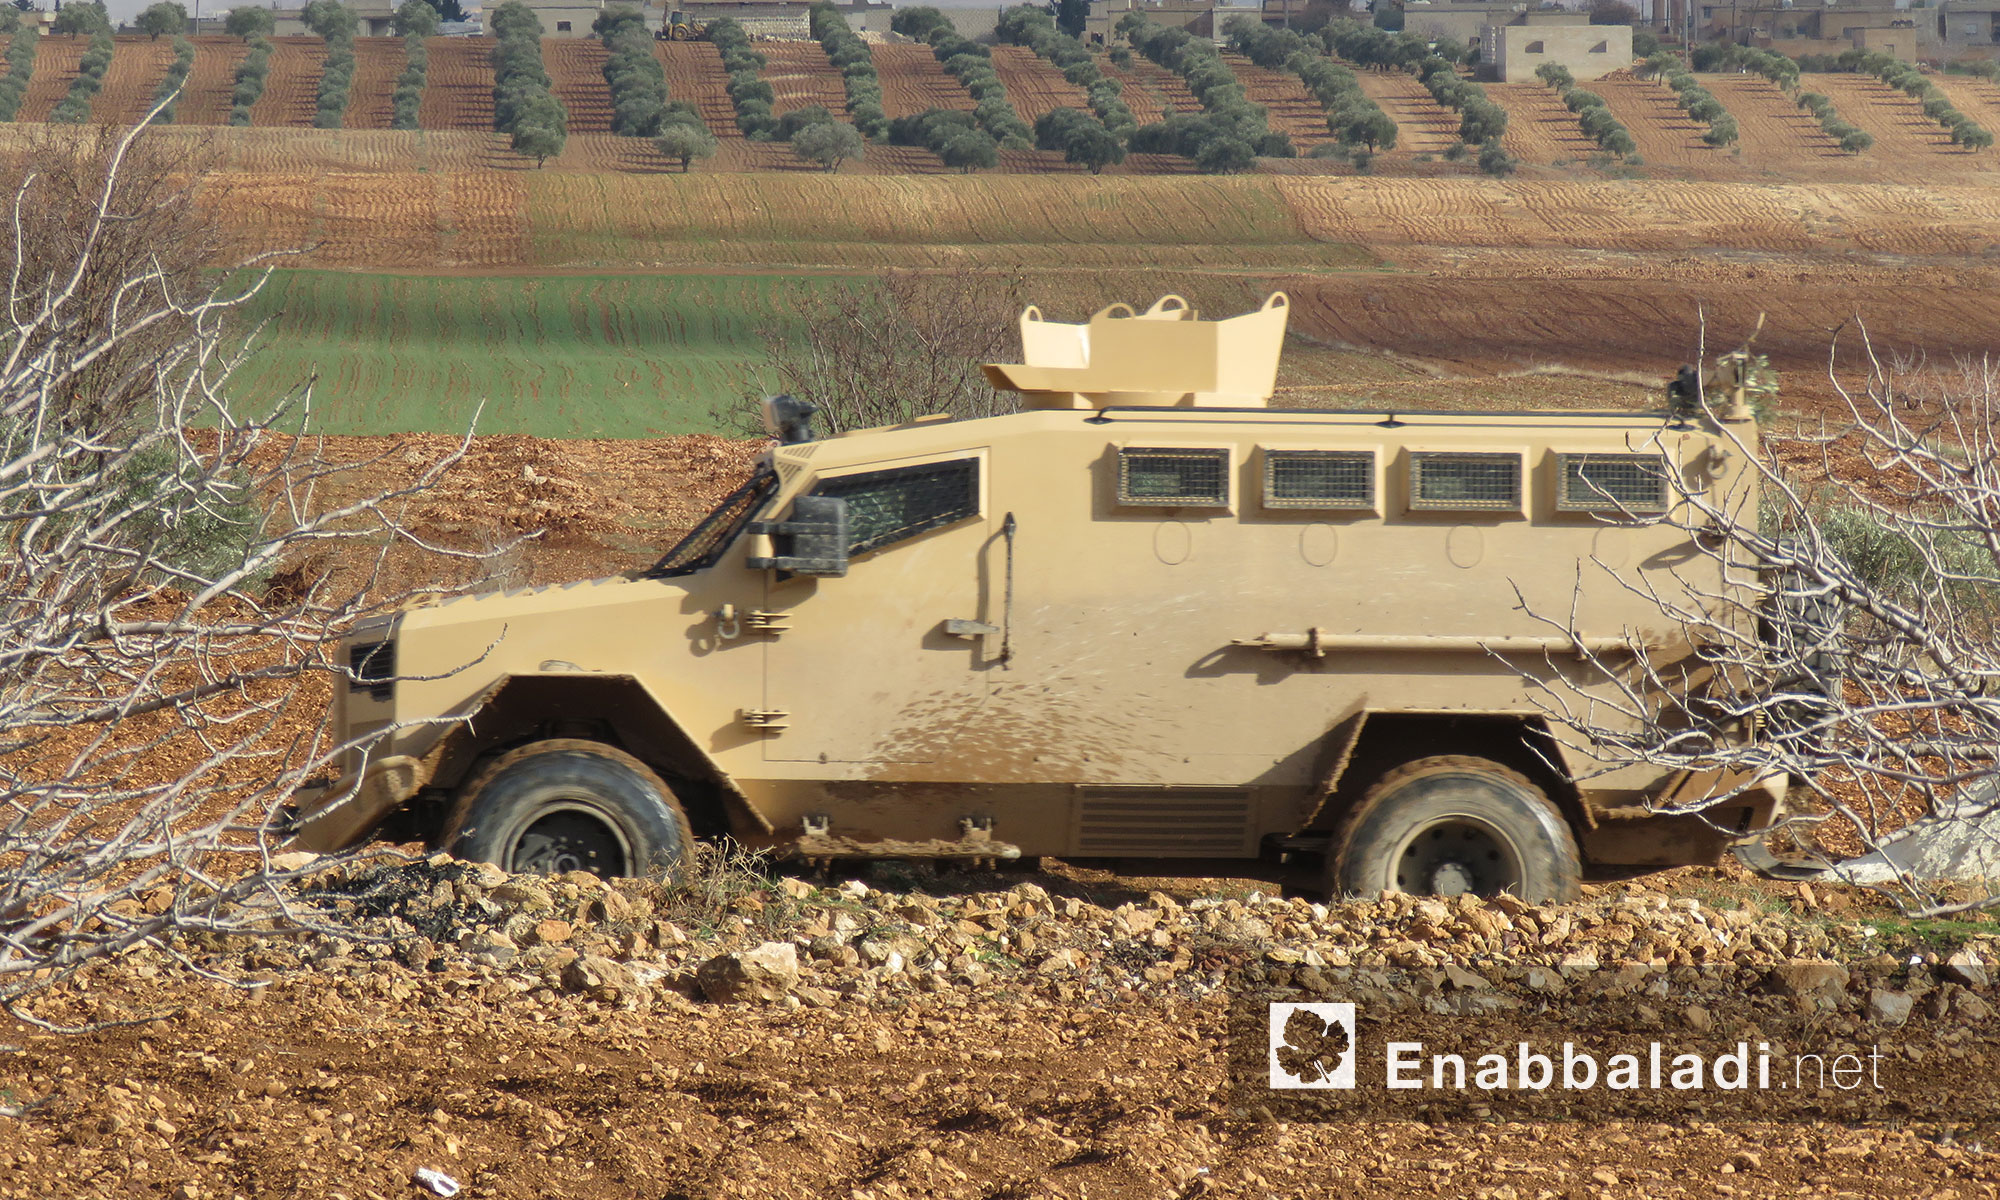 مدرعات تركية لأول مرة في معارك جيش الحر بريف ادلب الجنوبي الشرقي وريف حماه - 14 كانون الثاني 2018 (عنب بلدي)
